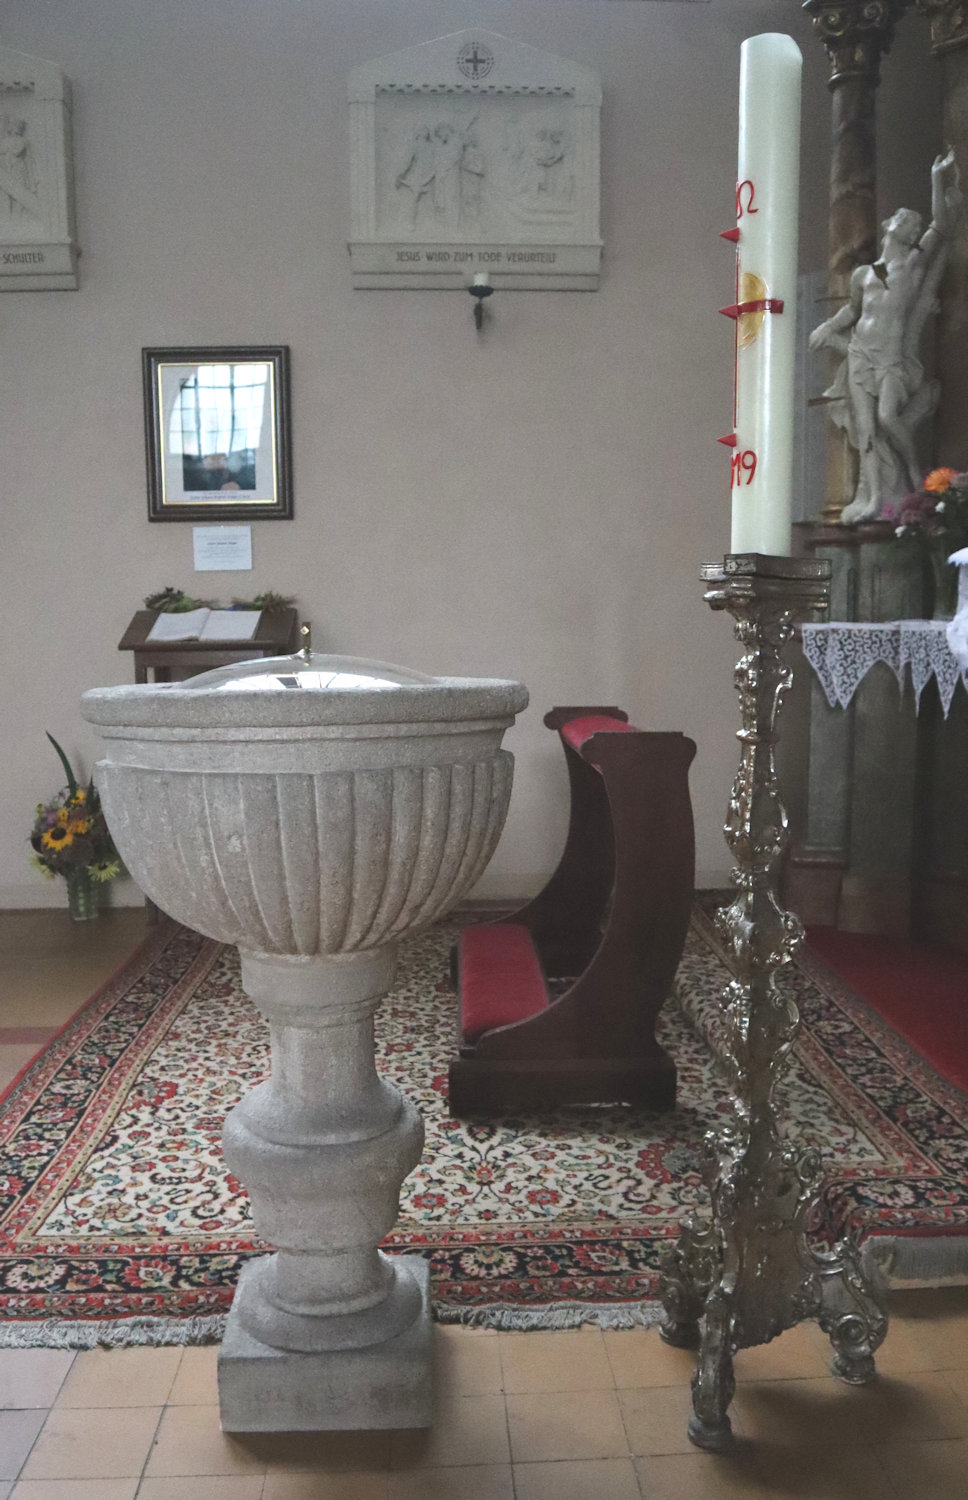 (alter) Taufstein in der Pfarrkirche in Enzersfeld, an dem Johannes Stöger am 4. Oktober 1810 getauft wurde